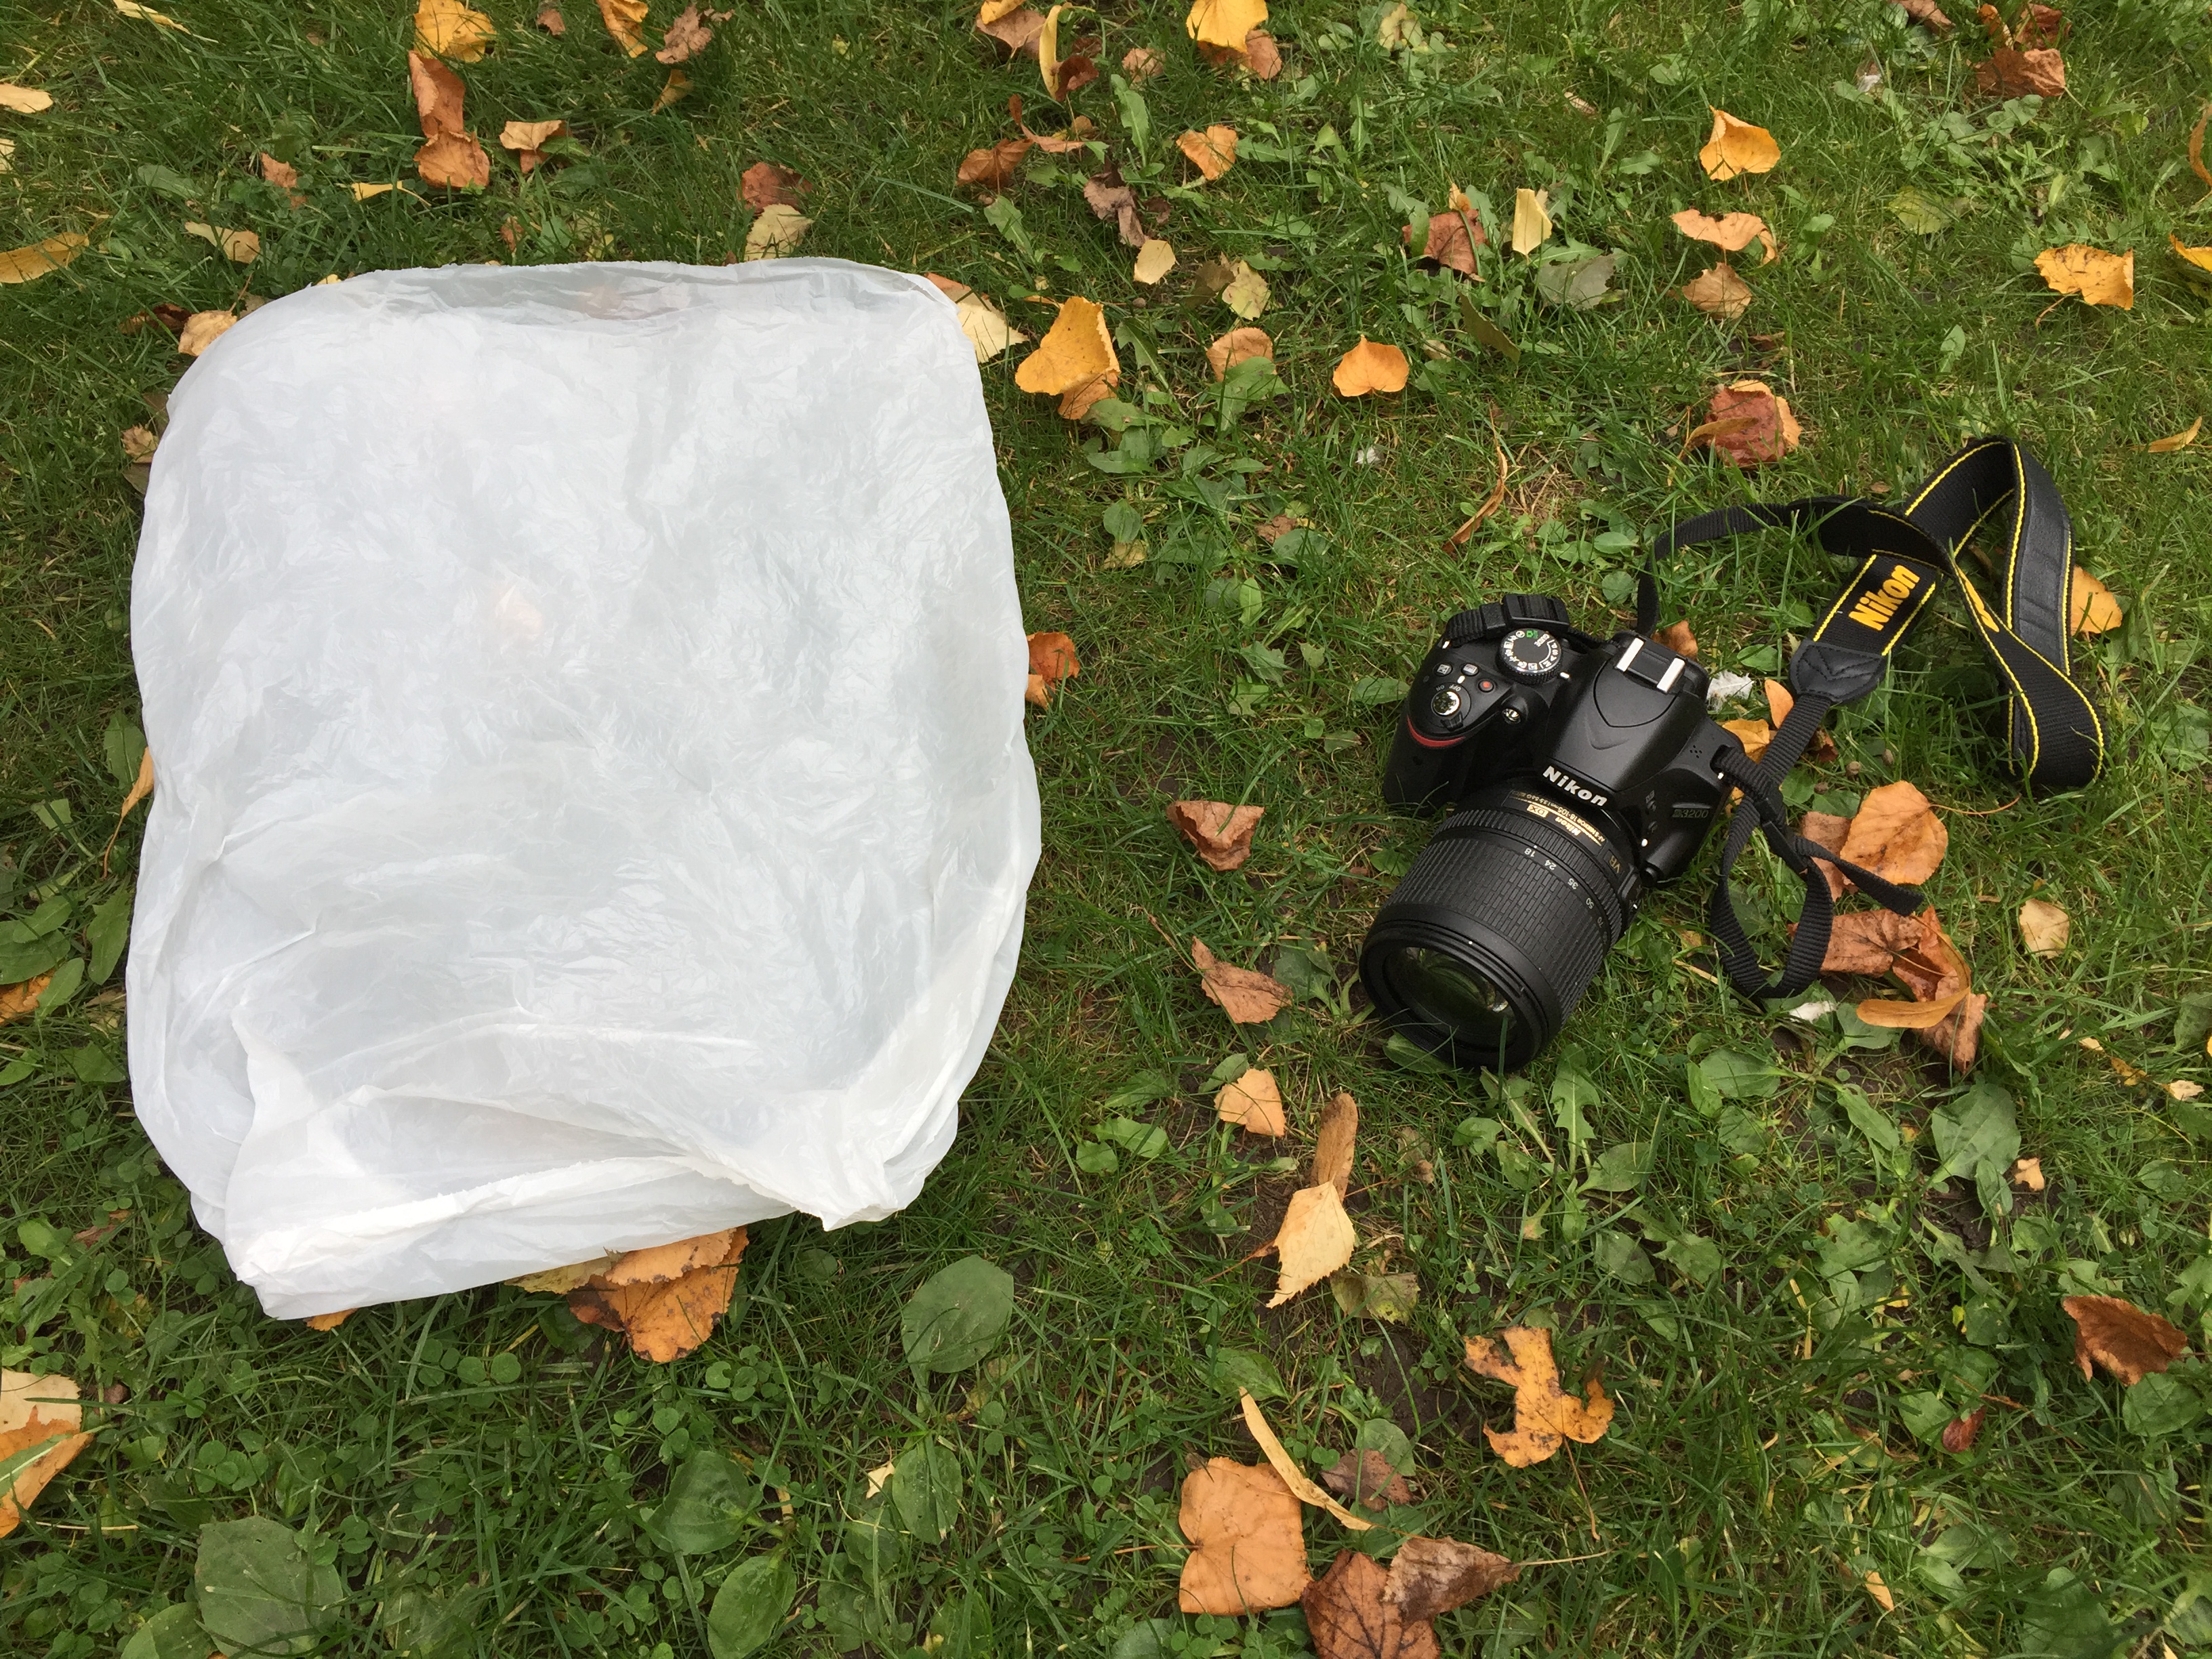 Mania dyr erfaring 4 smarte fototricks med en plasticpose | Digitalfoto.dk